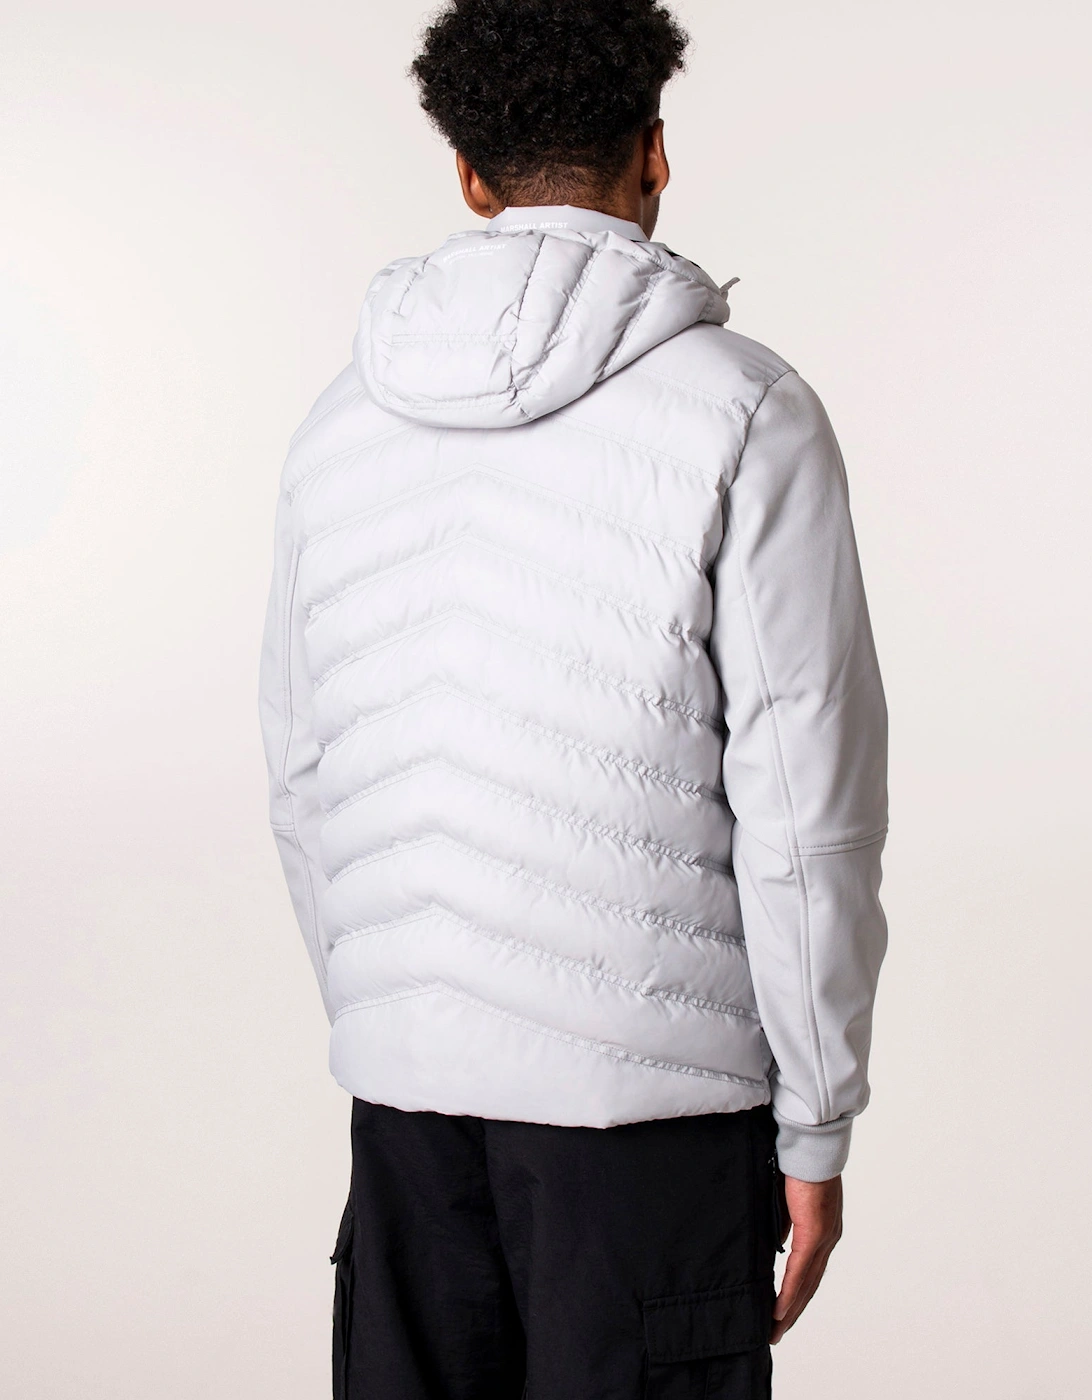 Takeda Softshell Hybrid Jacket